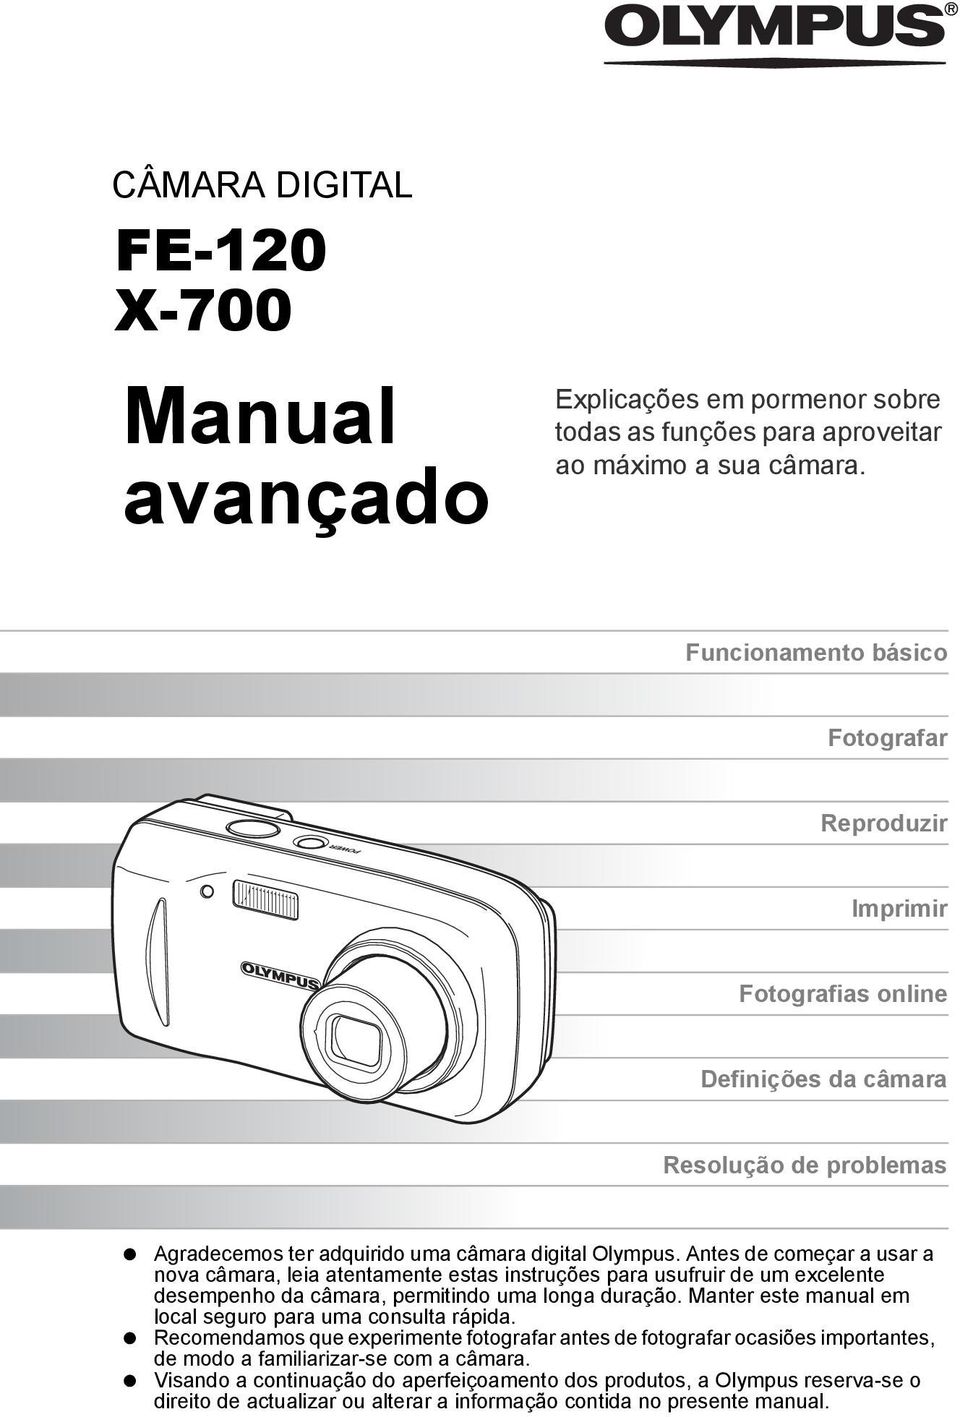 Antes de começar a usar a nova câmara, leia atentamente estas instruções para usufruir de um excelente desempenho da câmara, permitindo uma longa duração.